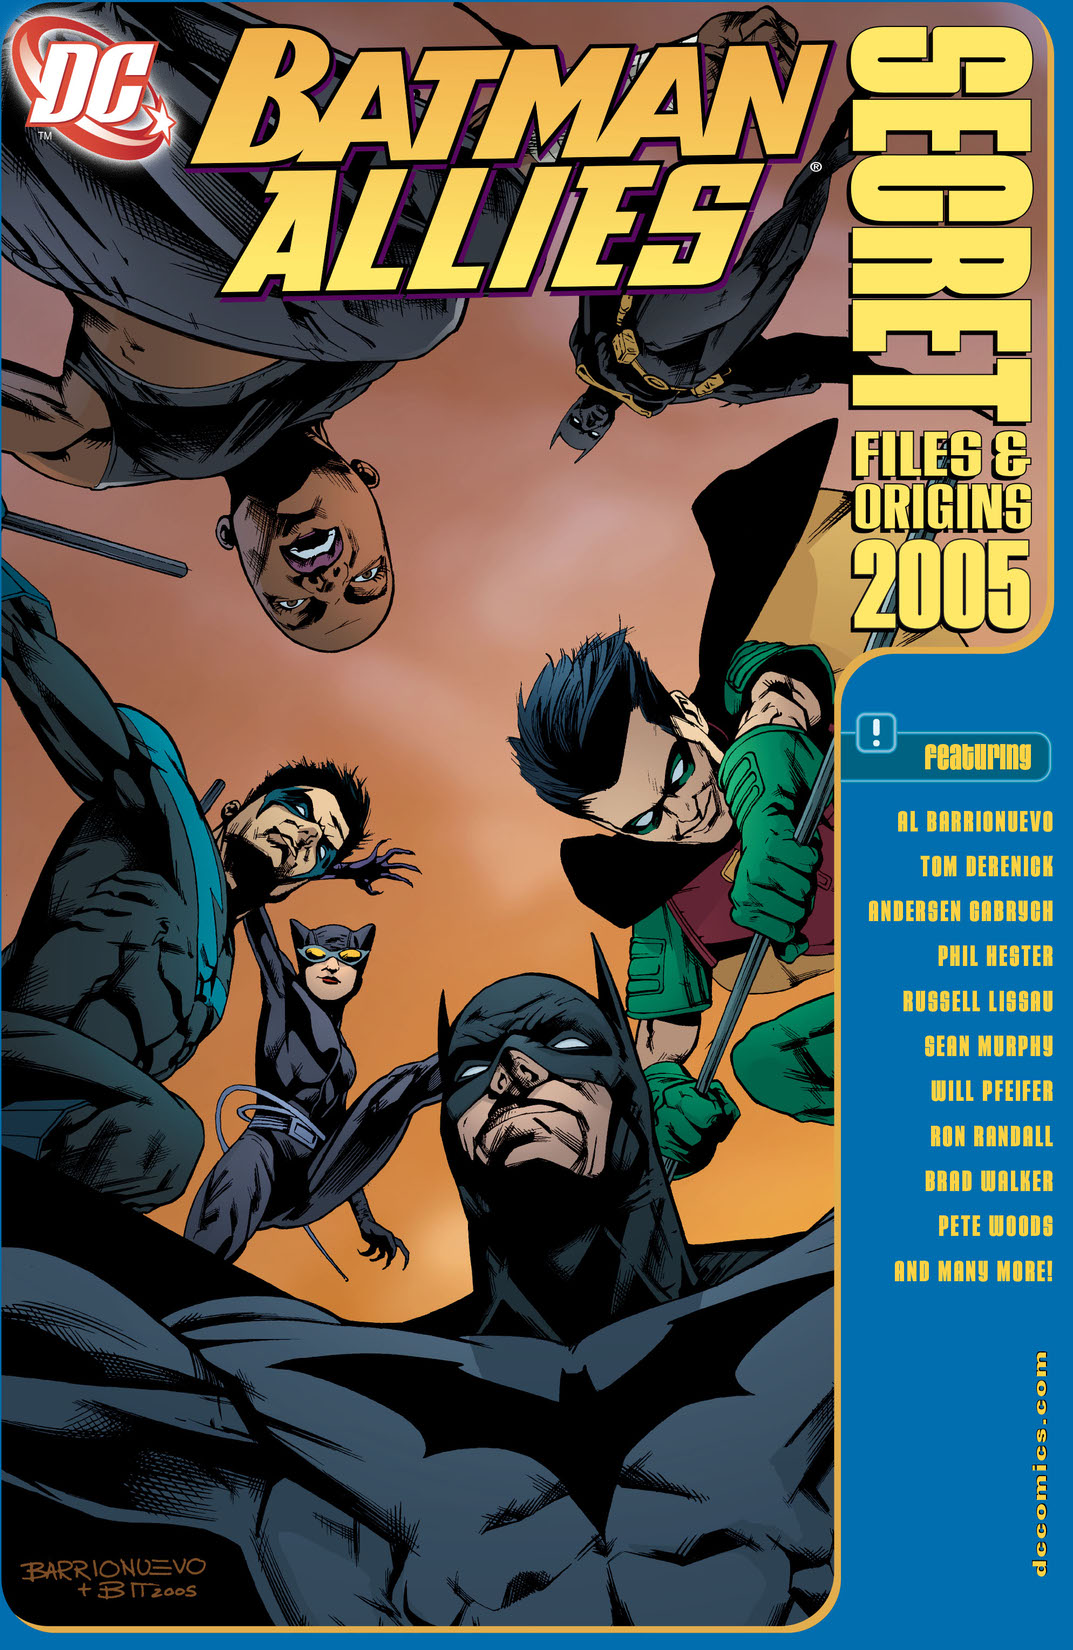 Batman Allies Secret Files 2005 #1 preview images